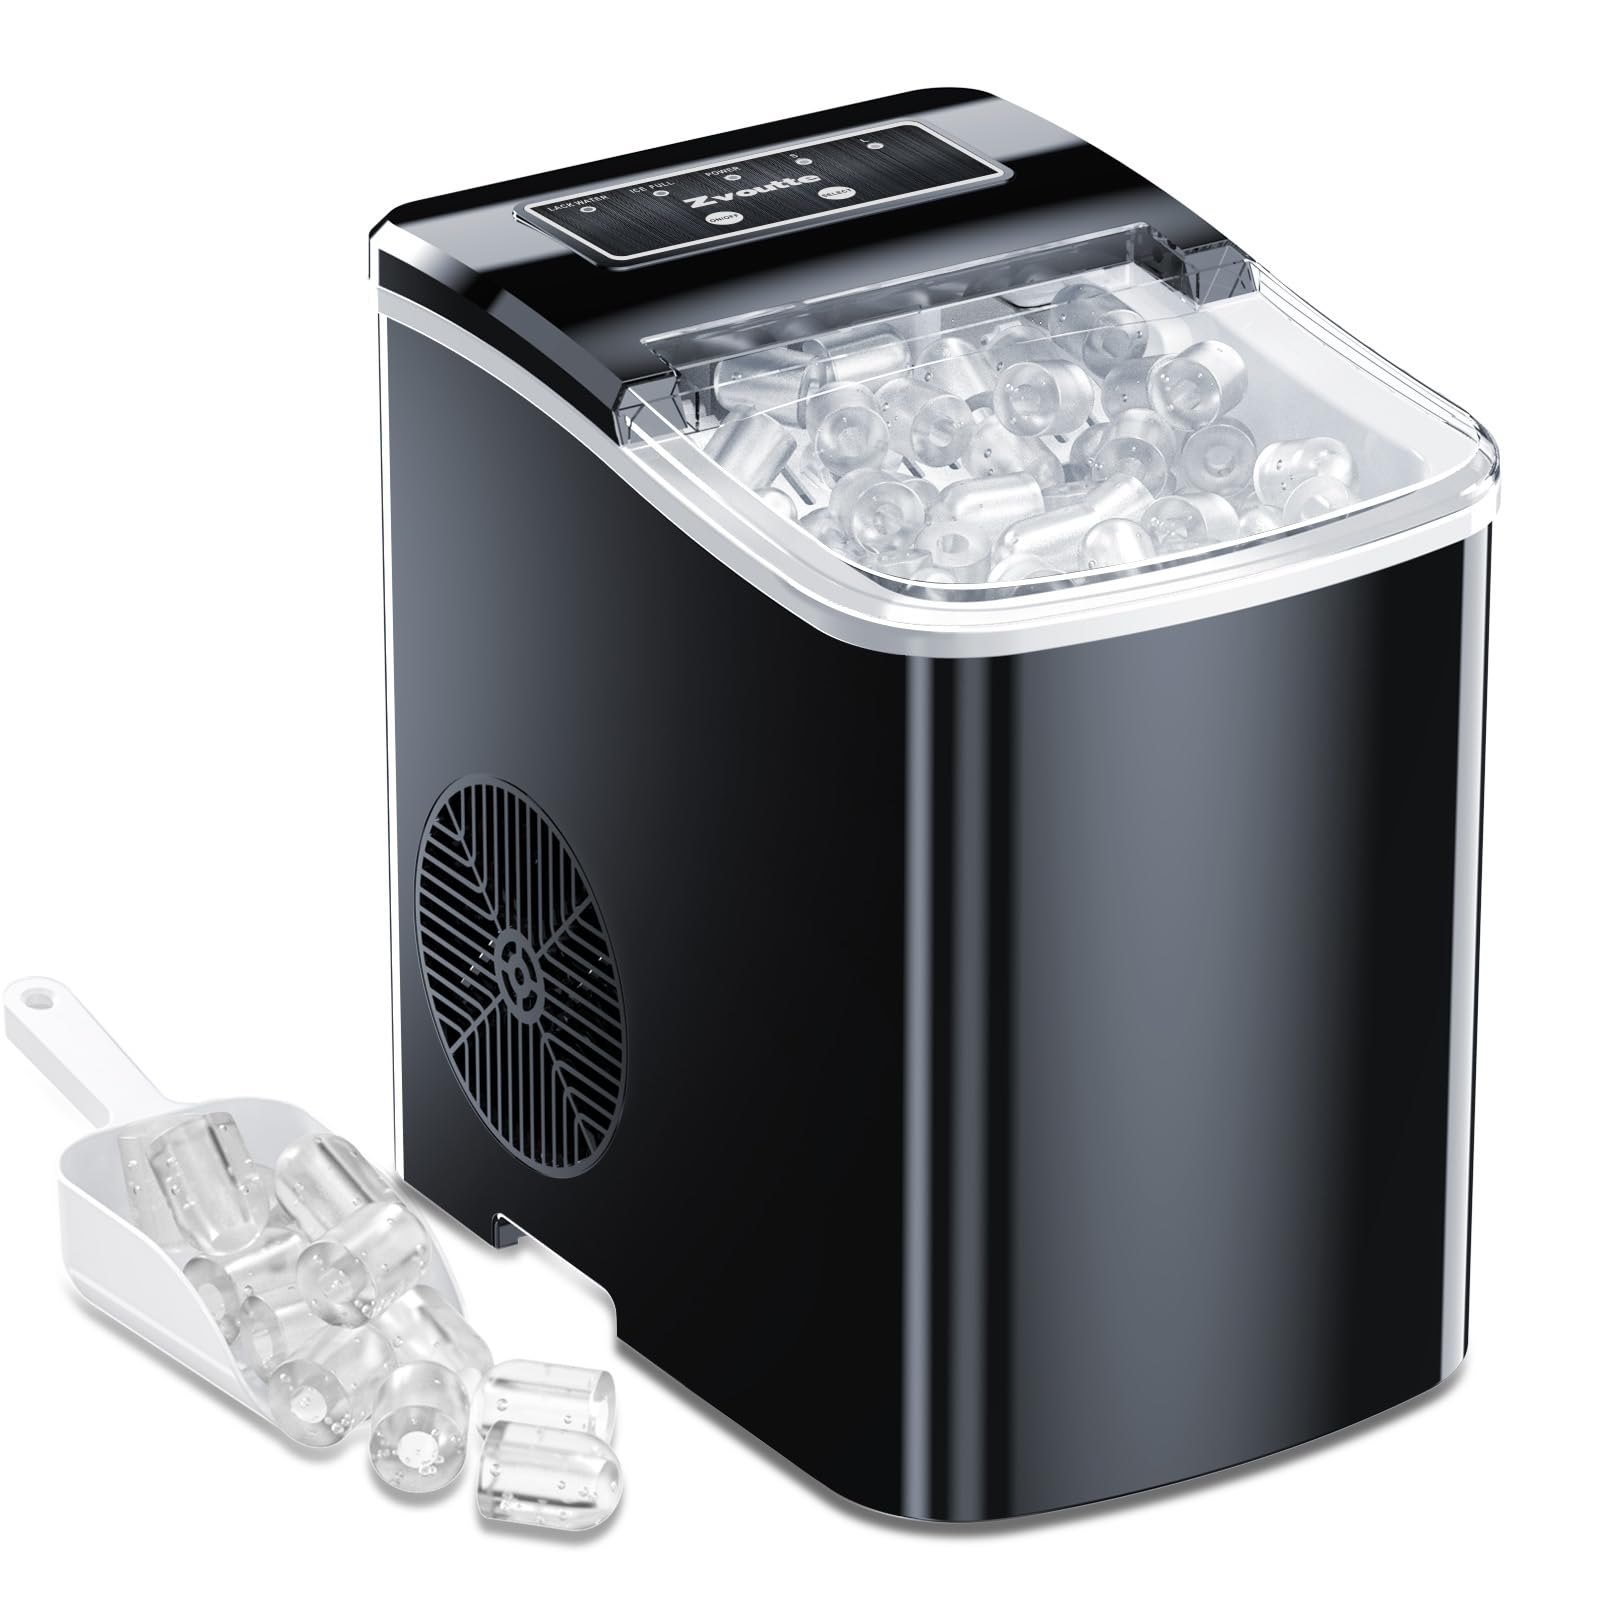 Zvoutte Portable Countertop Ice Maker Machine